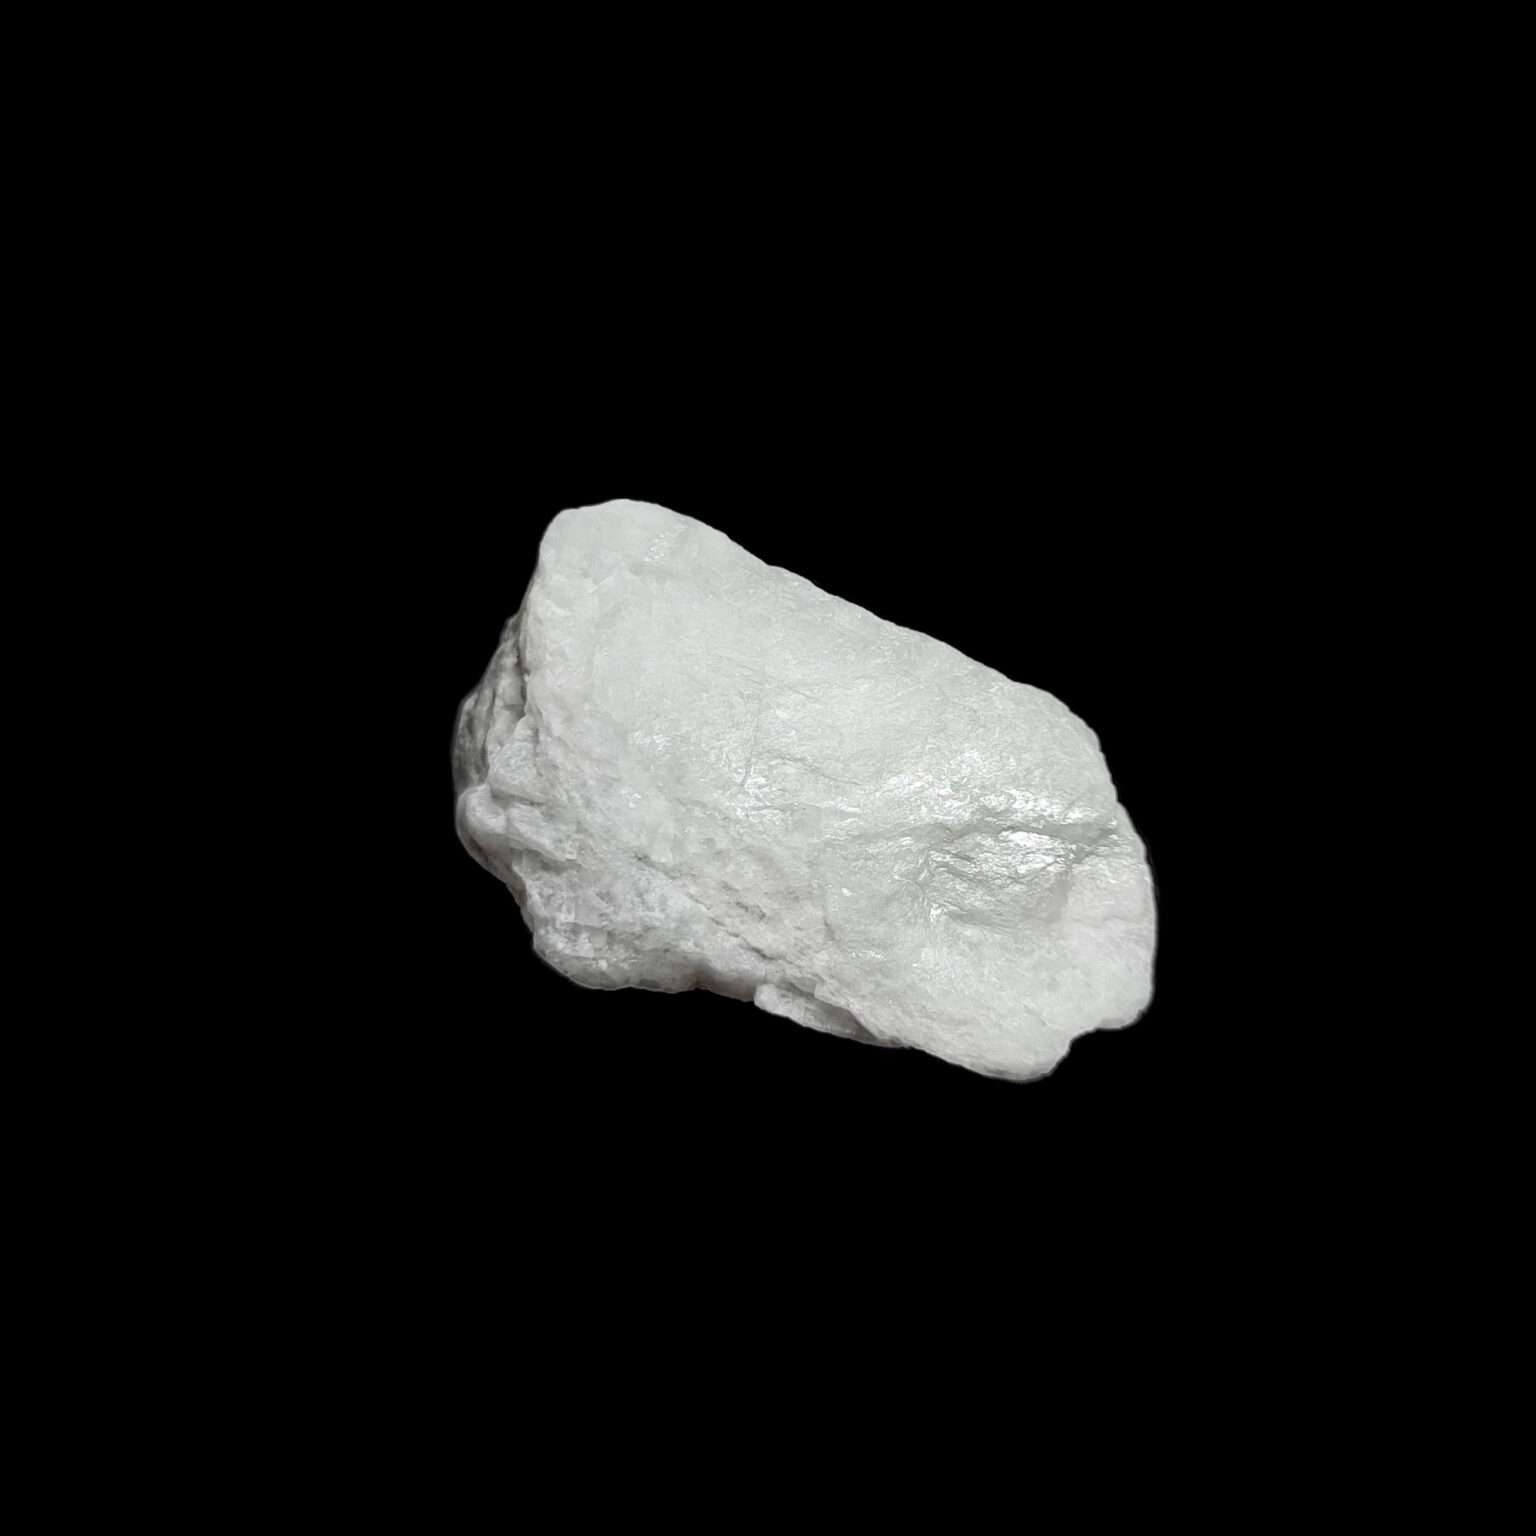 Produktpräsentation eines weißen Baryt Rohsteins. Seine Kristall Struktur ist gut zu erkennen.